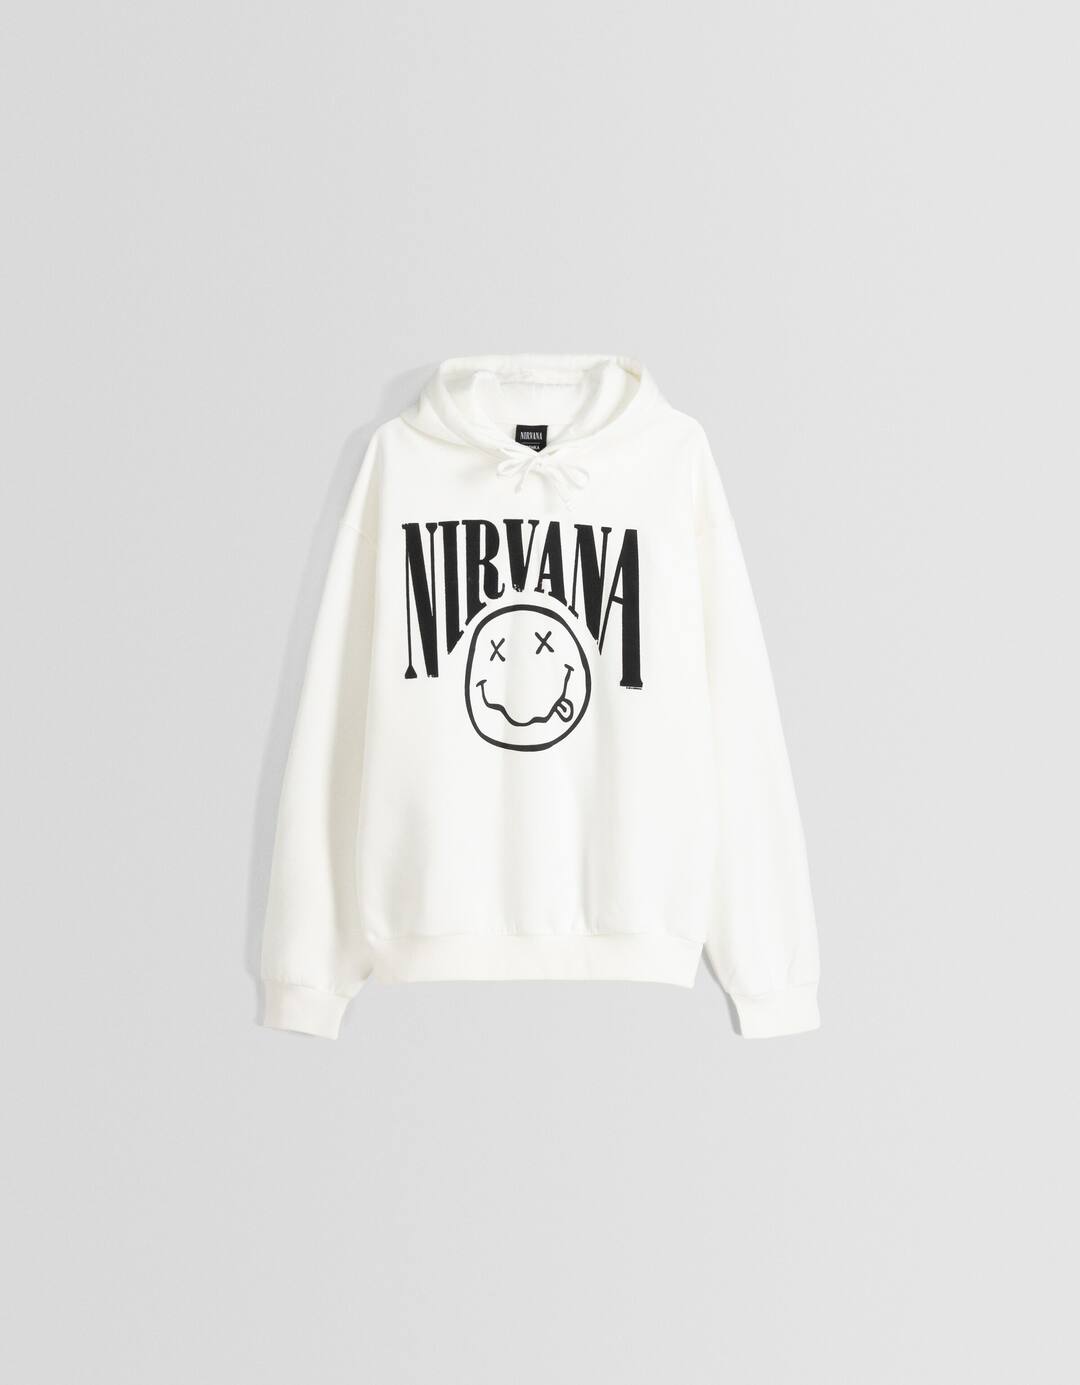 Printed Nirvana hoodie